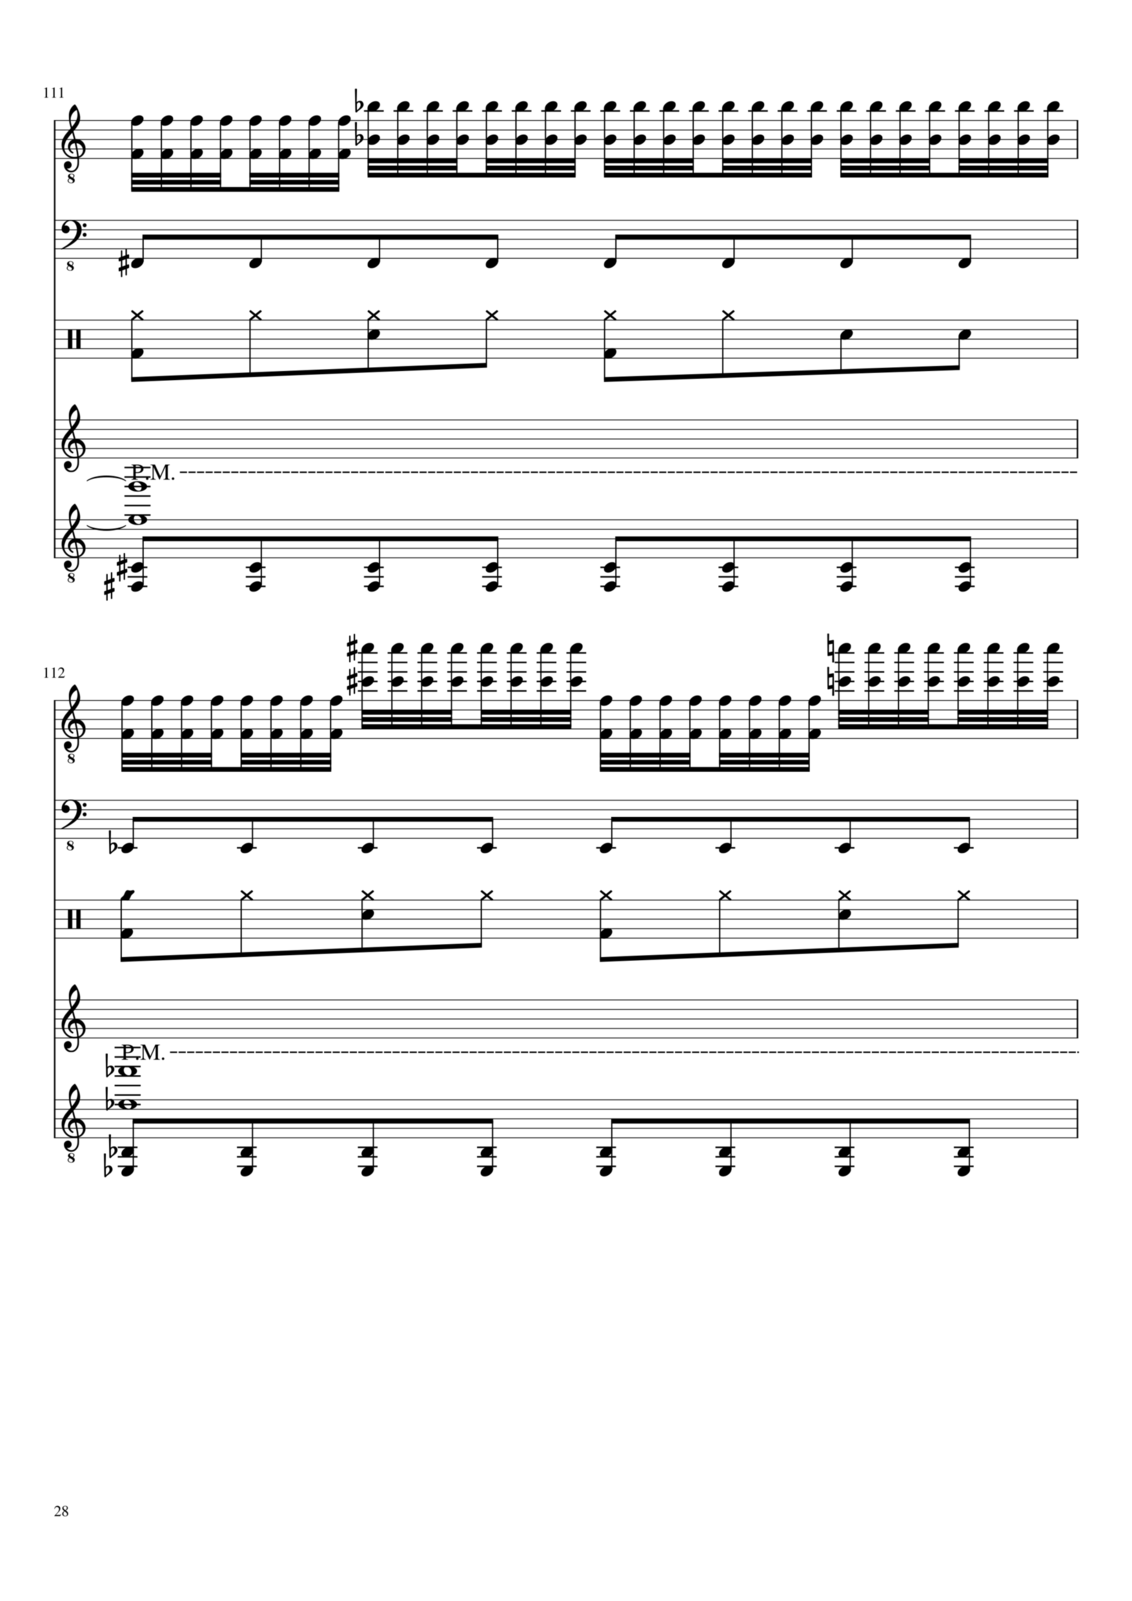 Vechnaya prizrachnaya vstrechnaya slide, Image 28